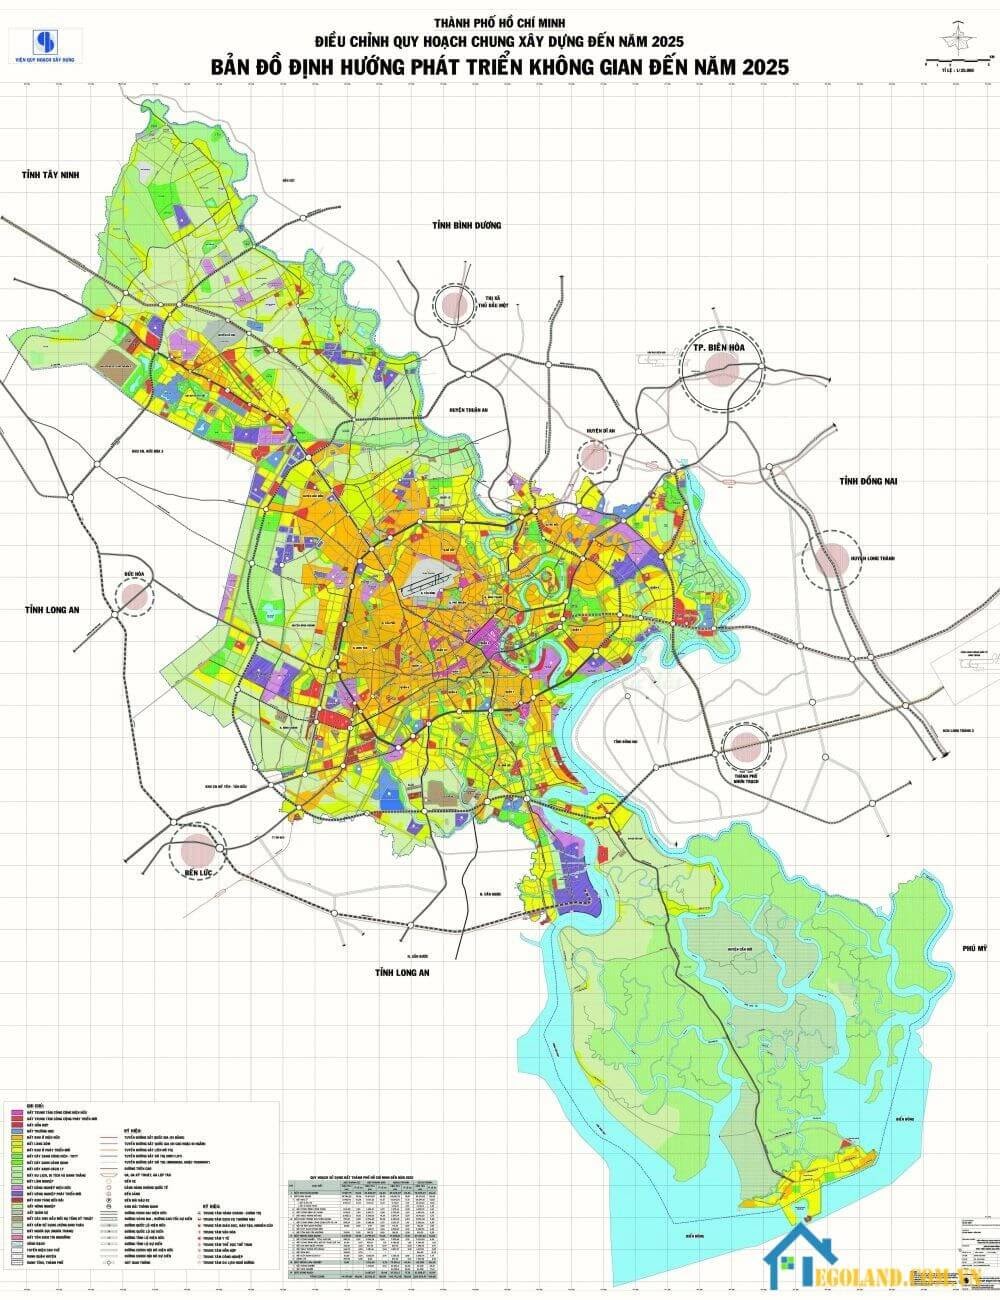 Bản đồ Hồ Chí Minh về quy hoạch và sử dụng đất